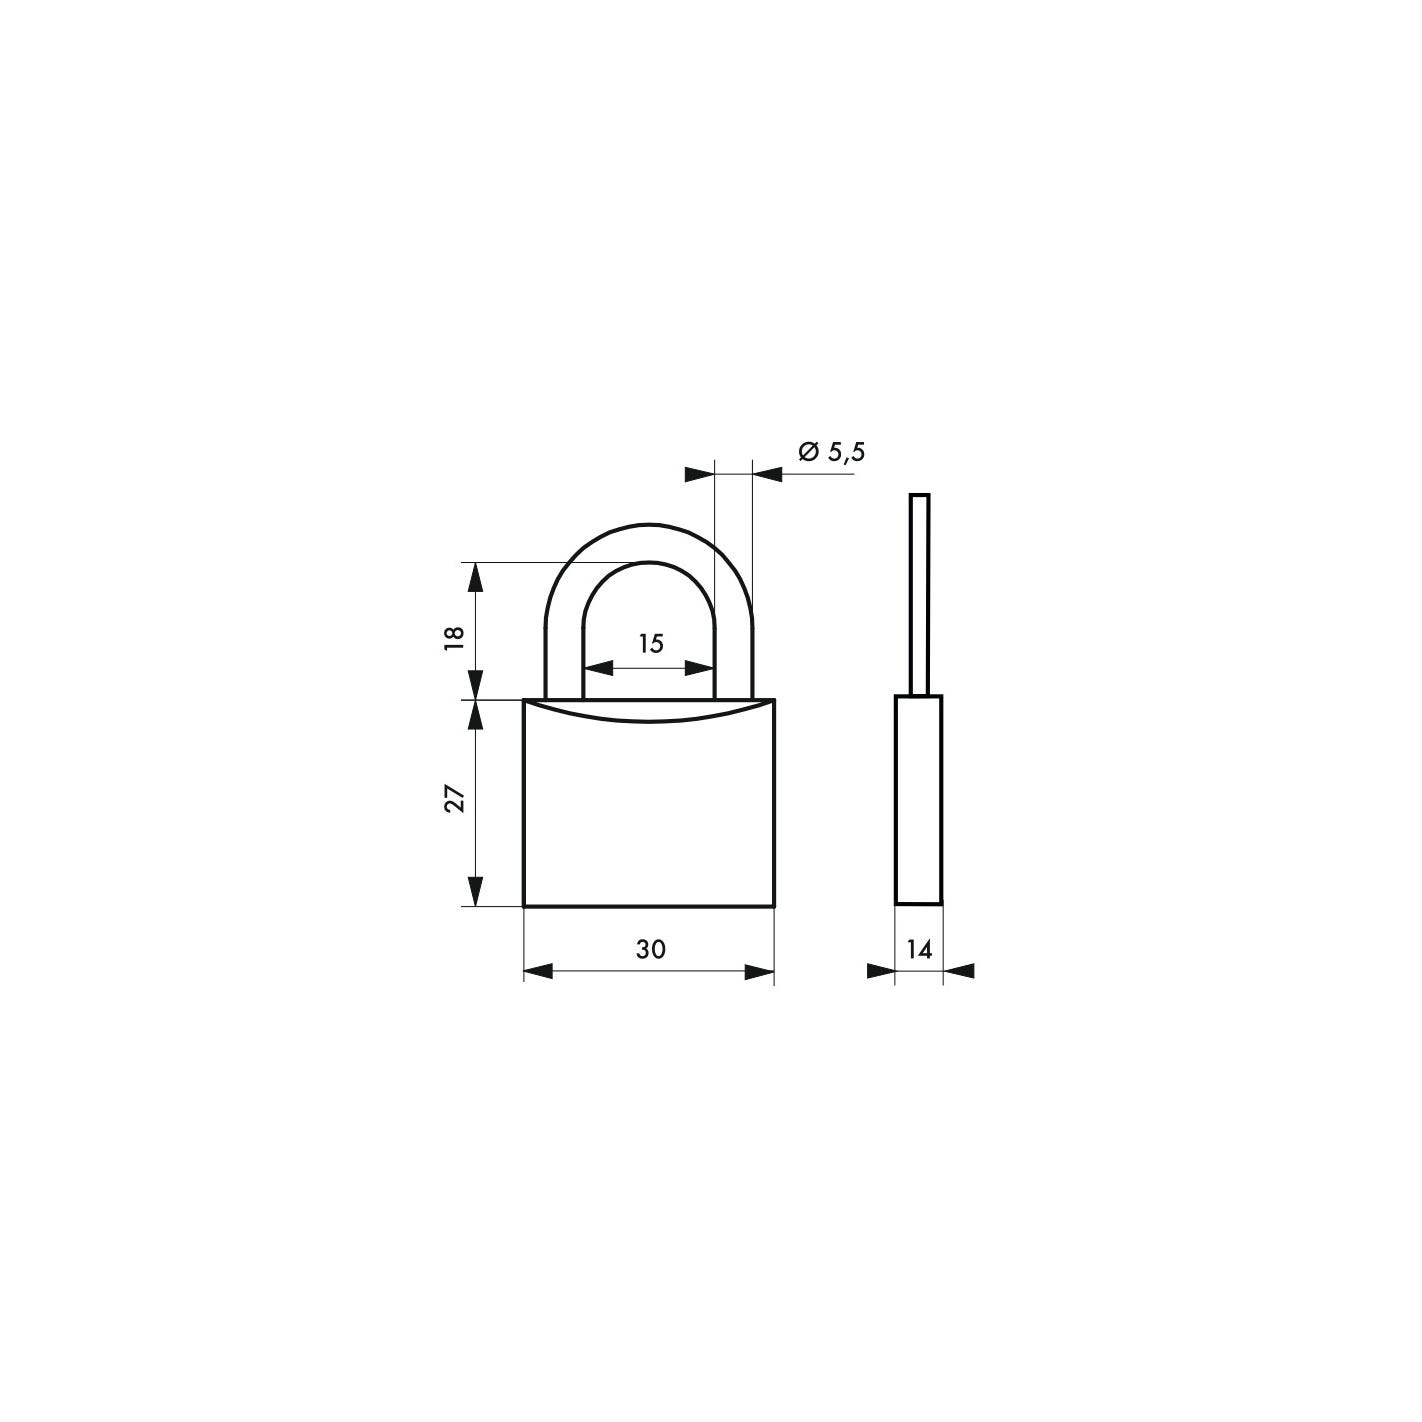 THIRARD - Cadenas à clé Extra Lock Bulmlecom, acier, intérieur, anse acier, 30mm, 3 clés 1